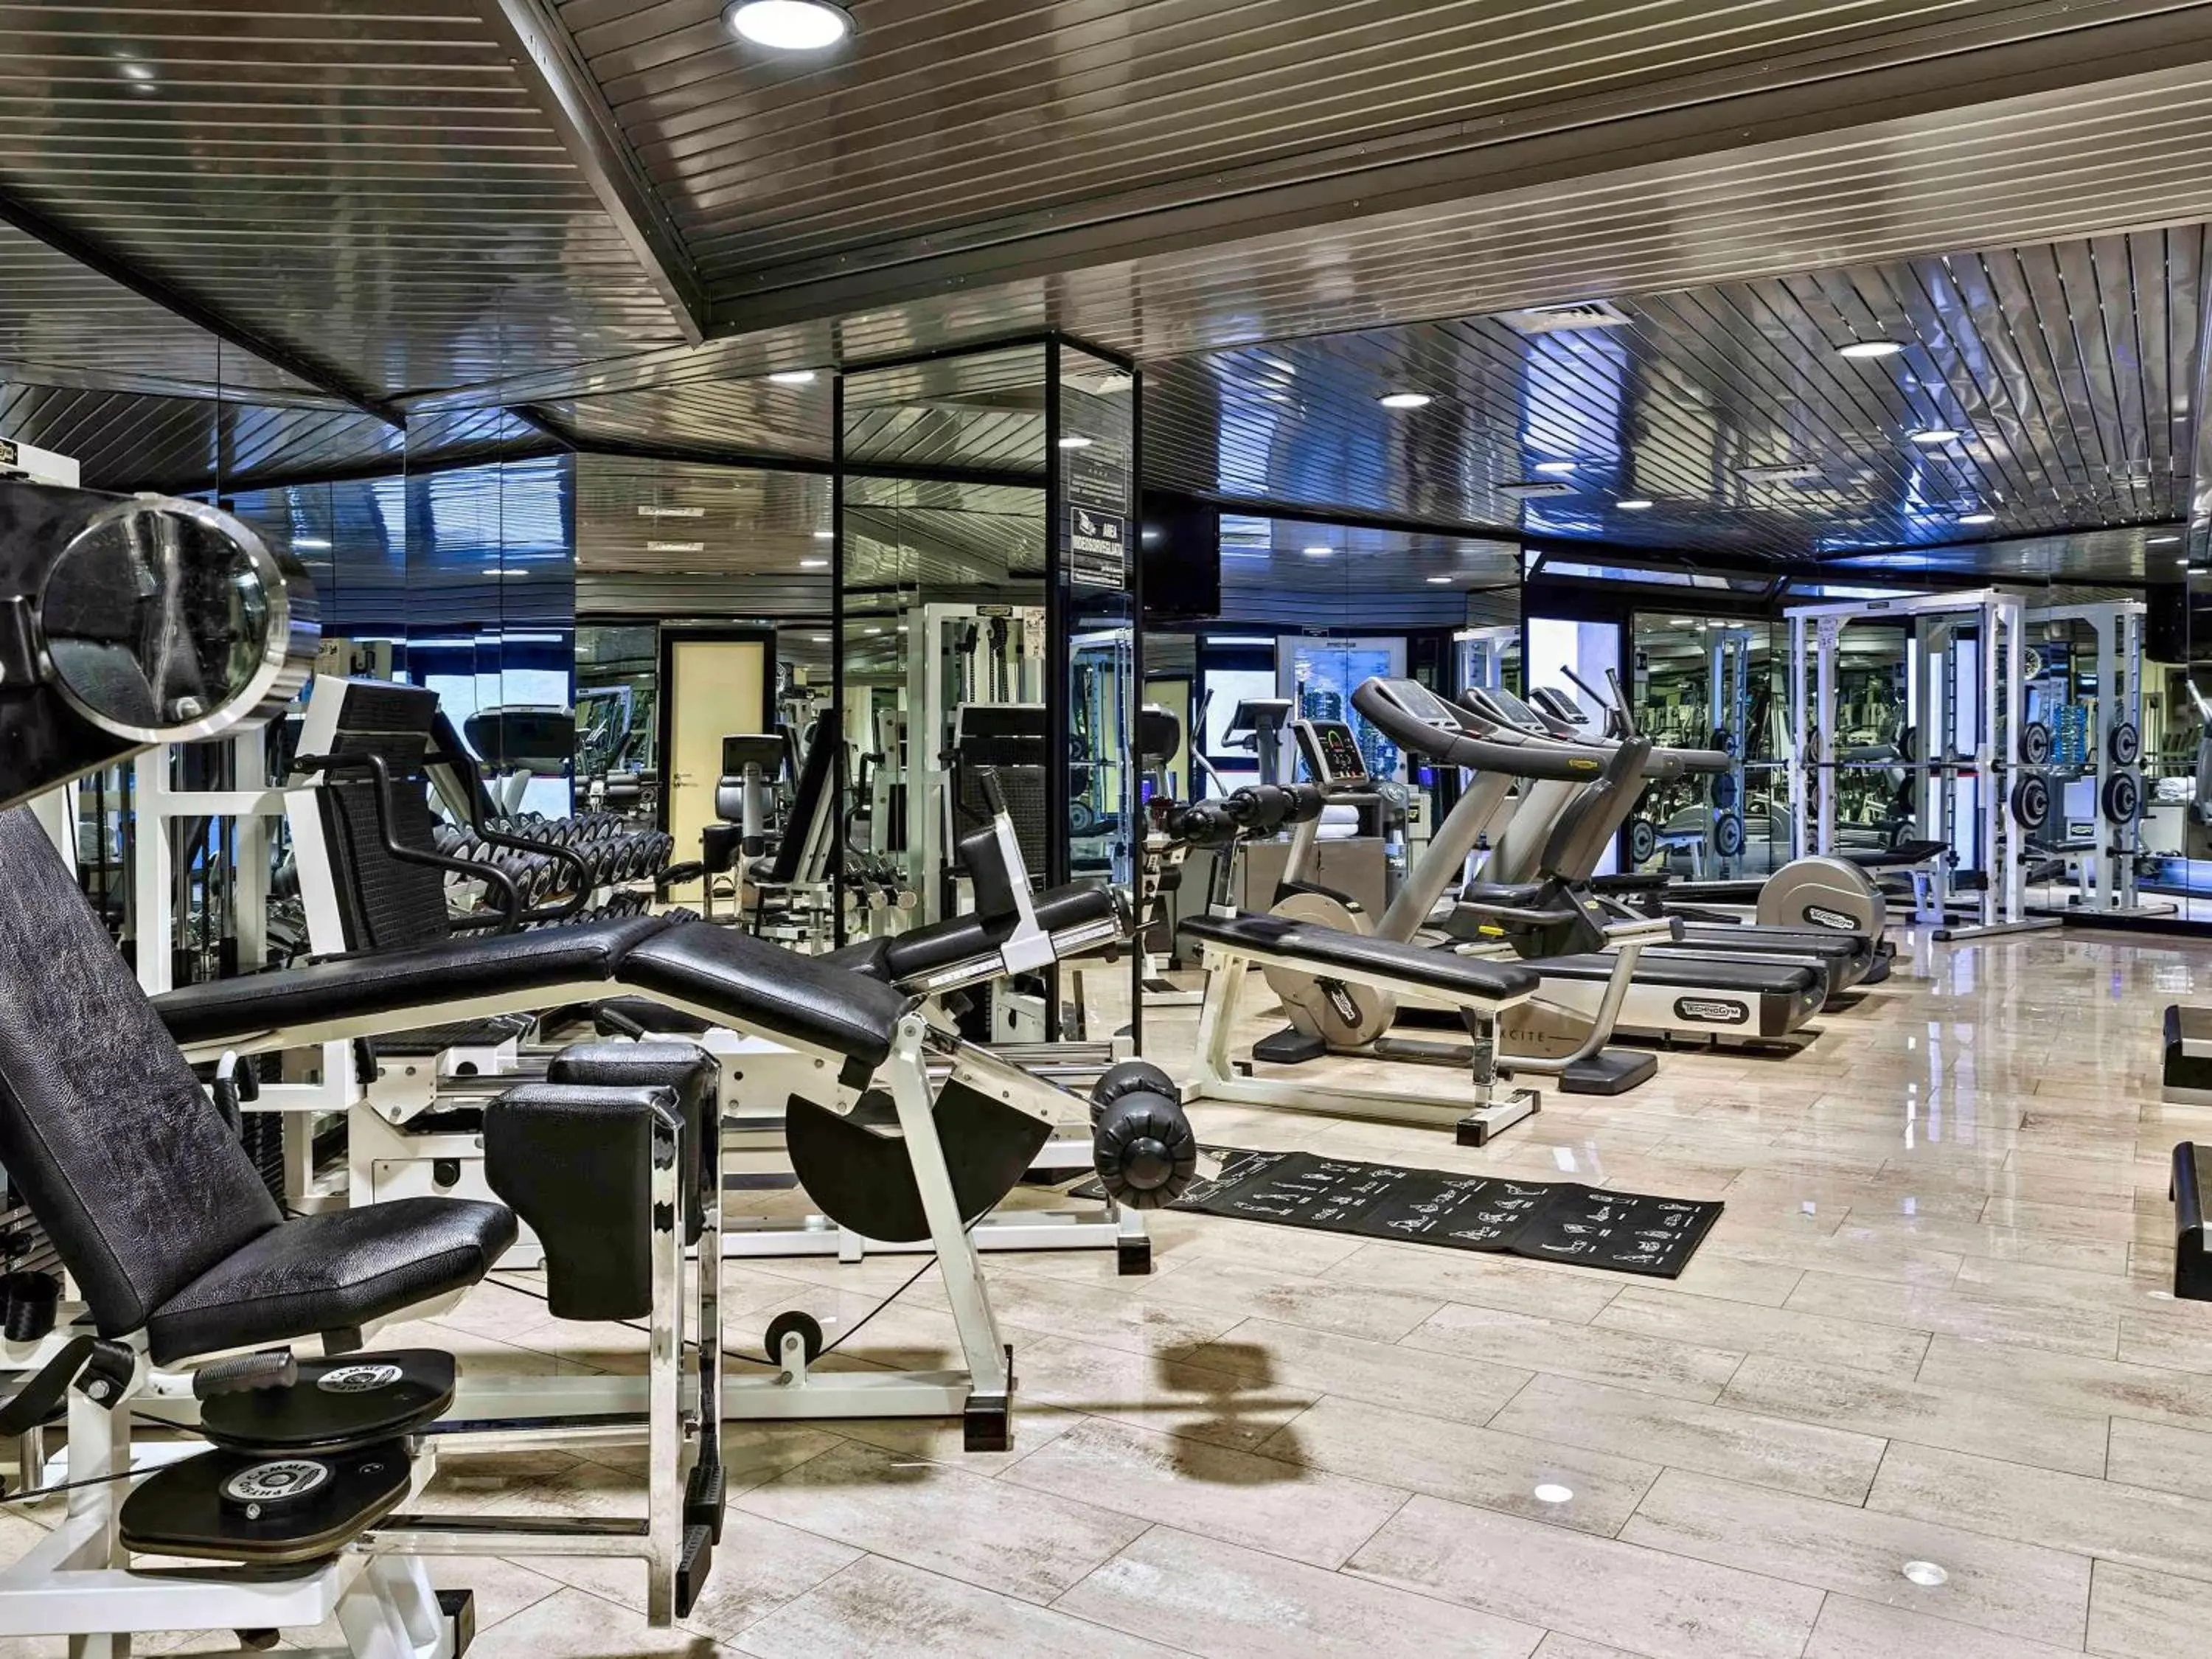 Fitness centre/facilities, Fitness Center/Facilities in Mercure Villa Romanazzi Carducci Bari